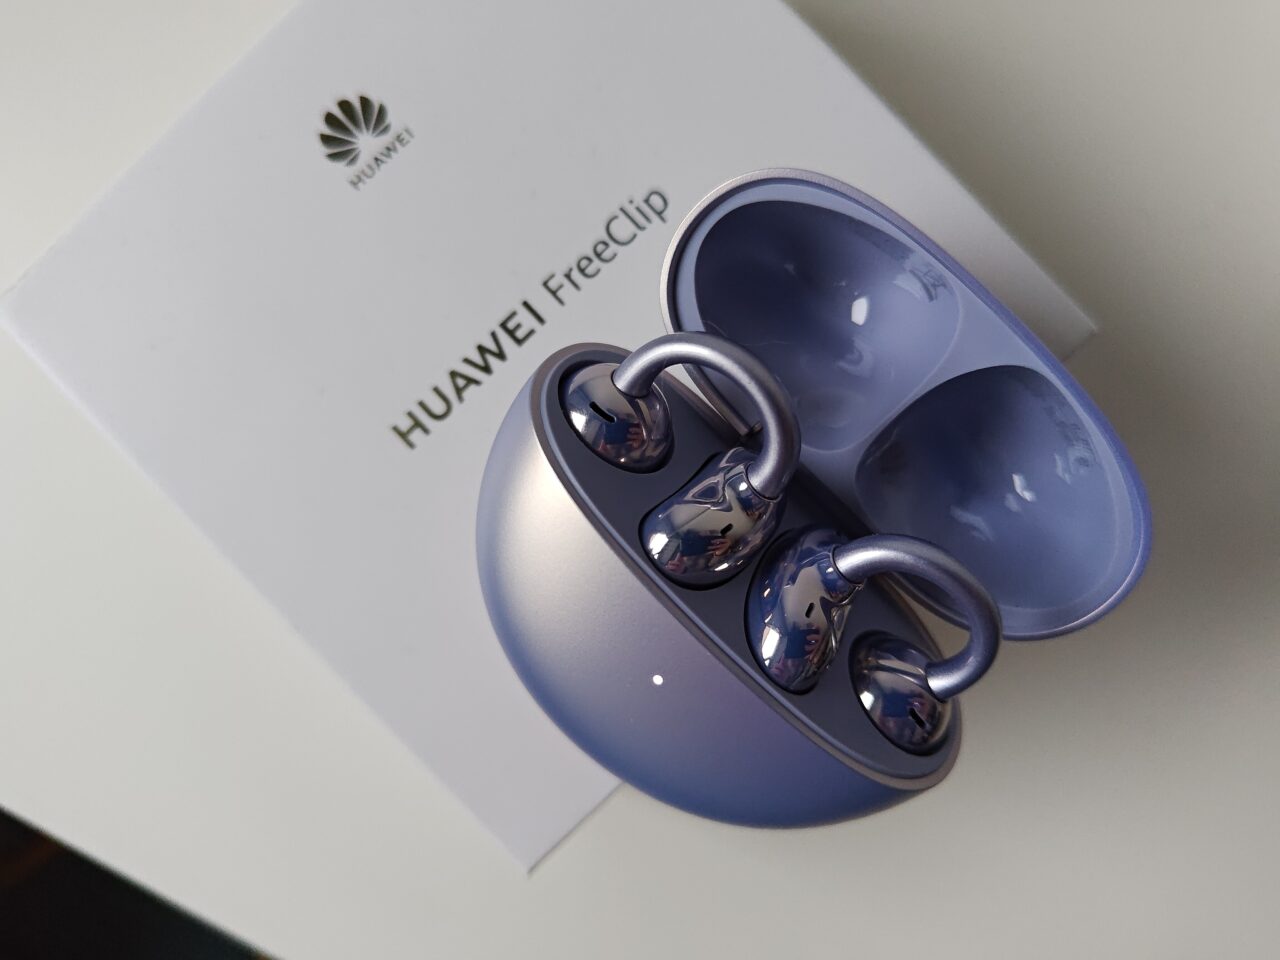 Słuchawki Bluetooth marki Huawei FreeClip w otwartym, niebieskim etui leżące na białym pudełku z logotypem producenta.